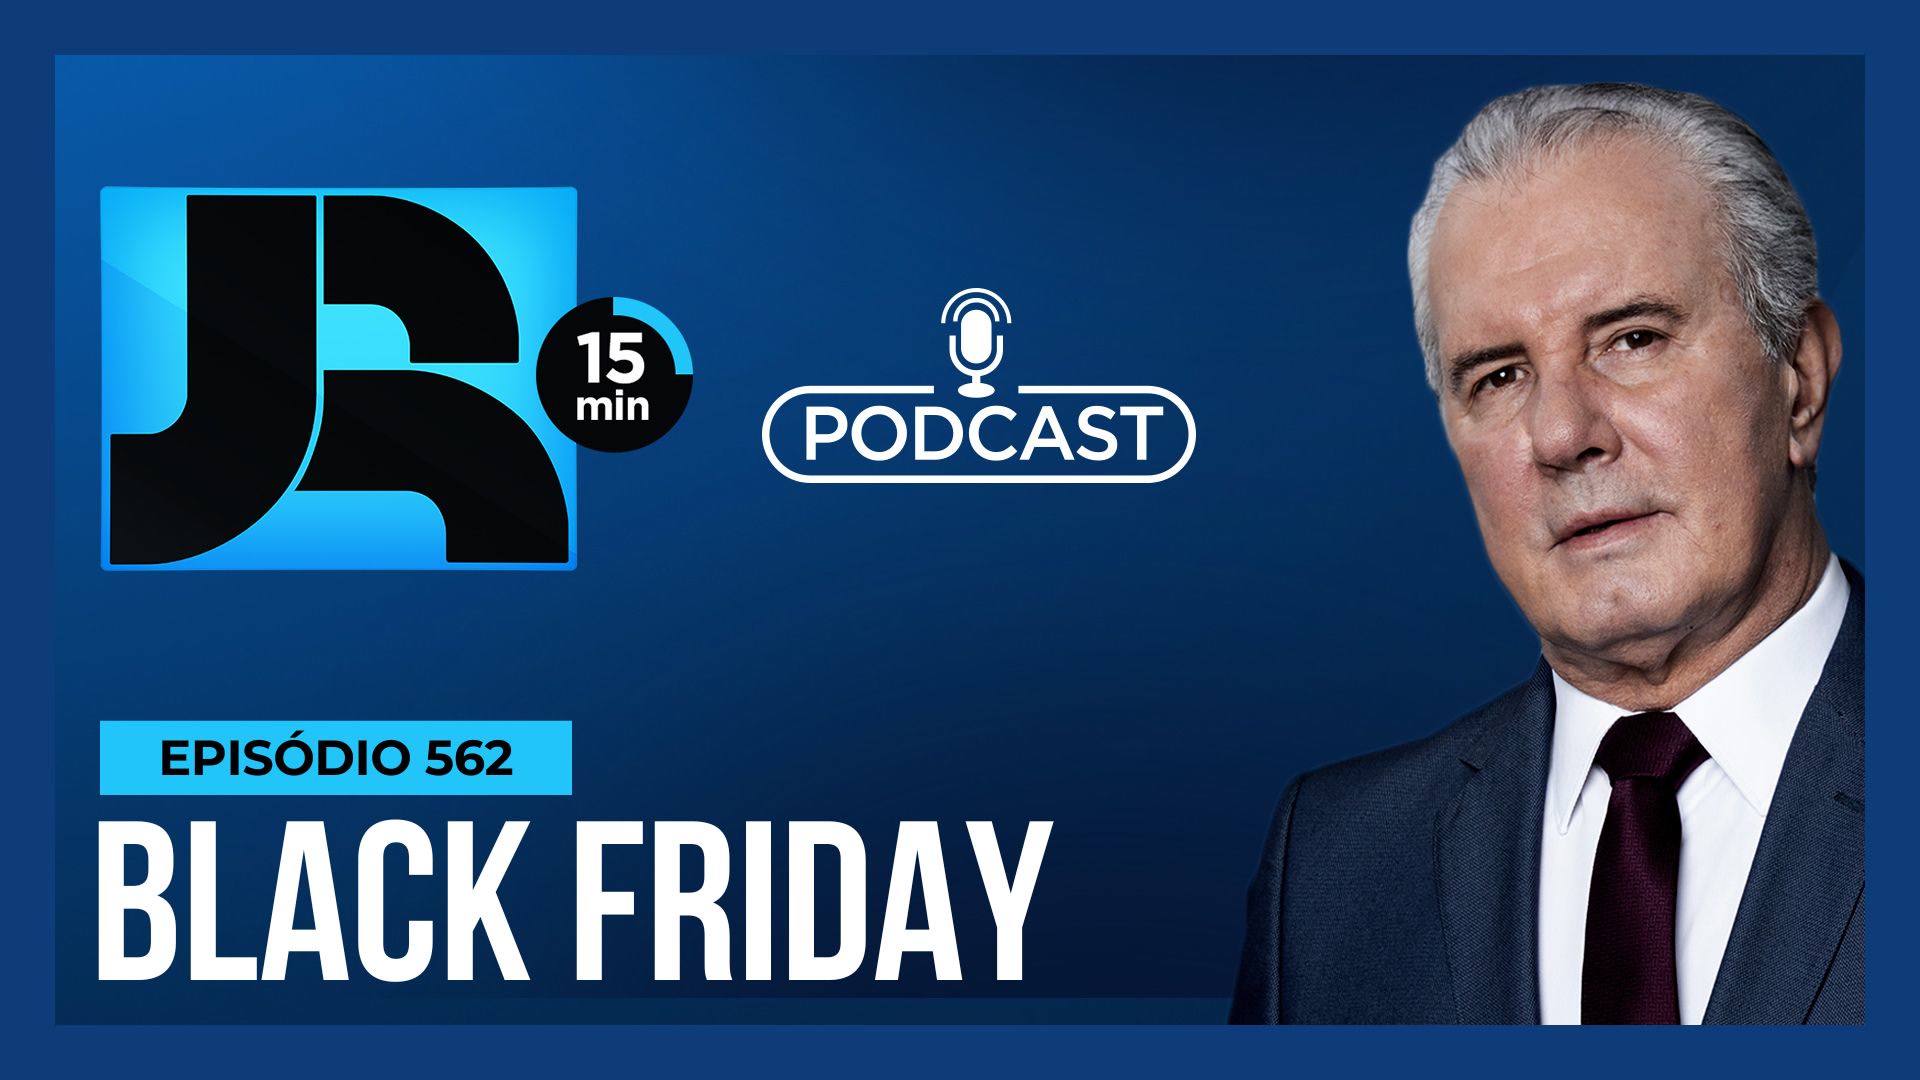 Vídeo: Podcast JR 15 Min #562 | Black Friday: como aproveitar as promoções e não cair em golpes?